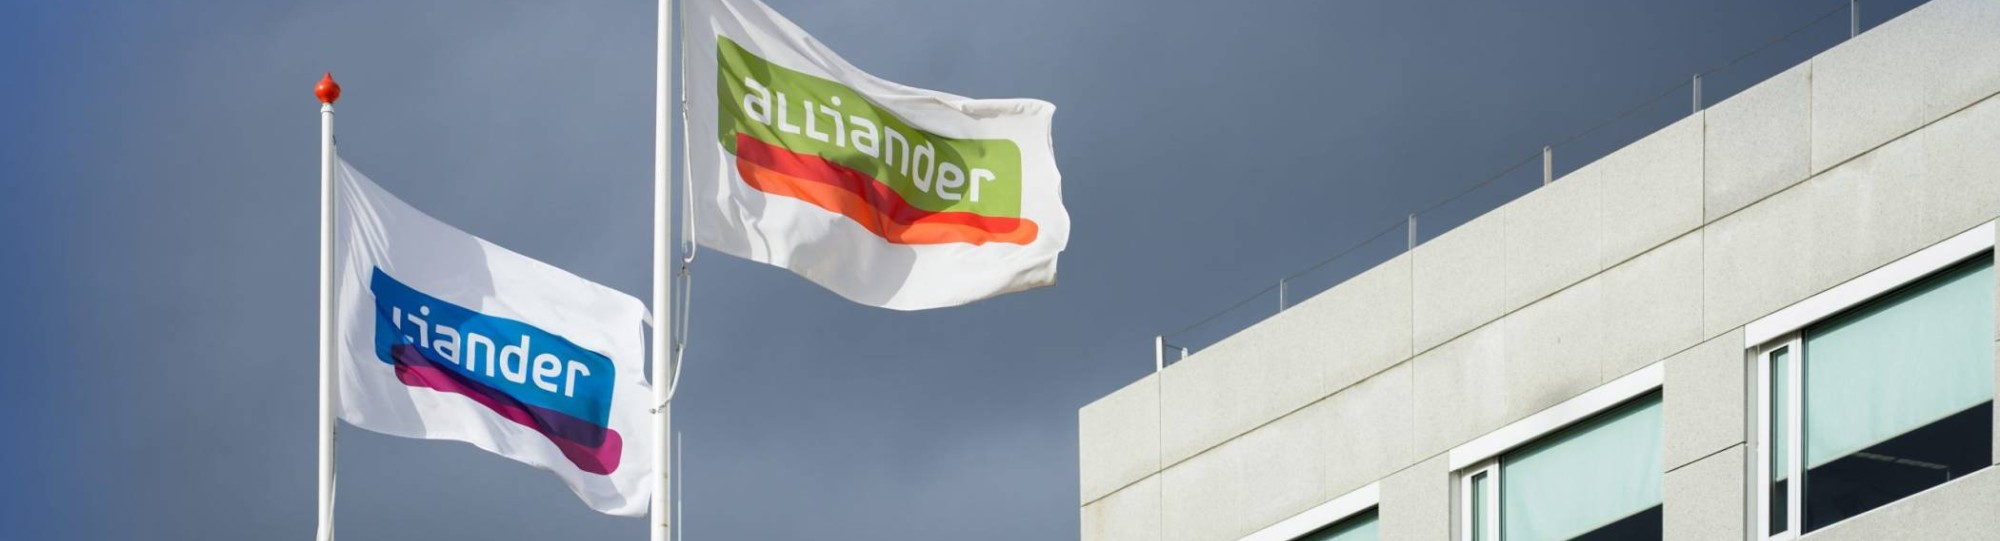 De vlag van Alliander wappert voor een gebouw. Seece